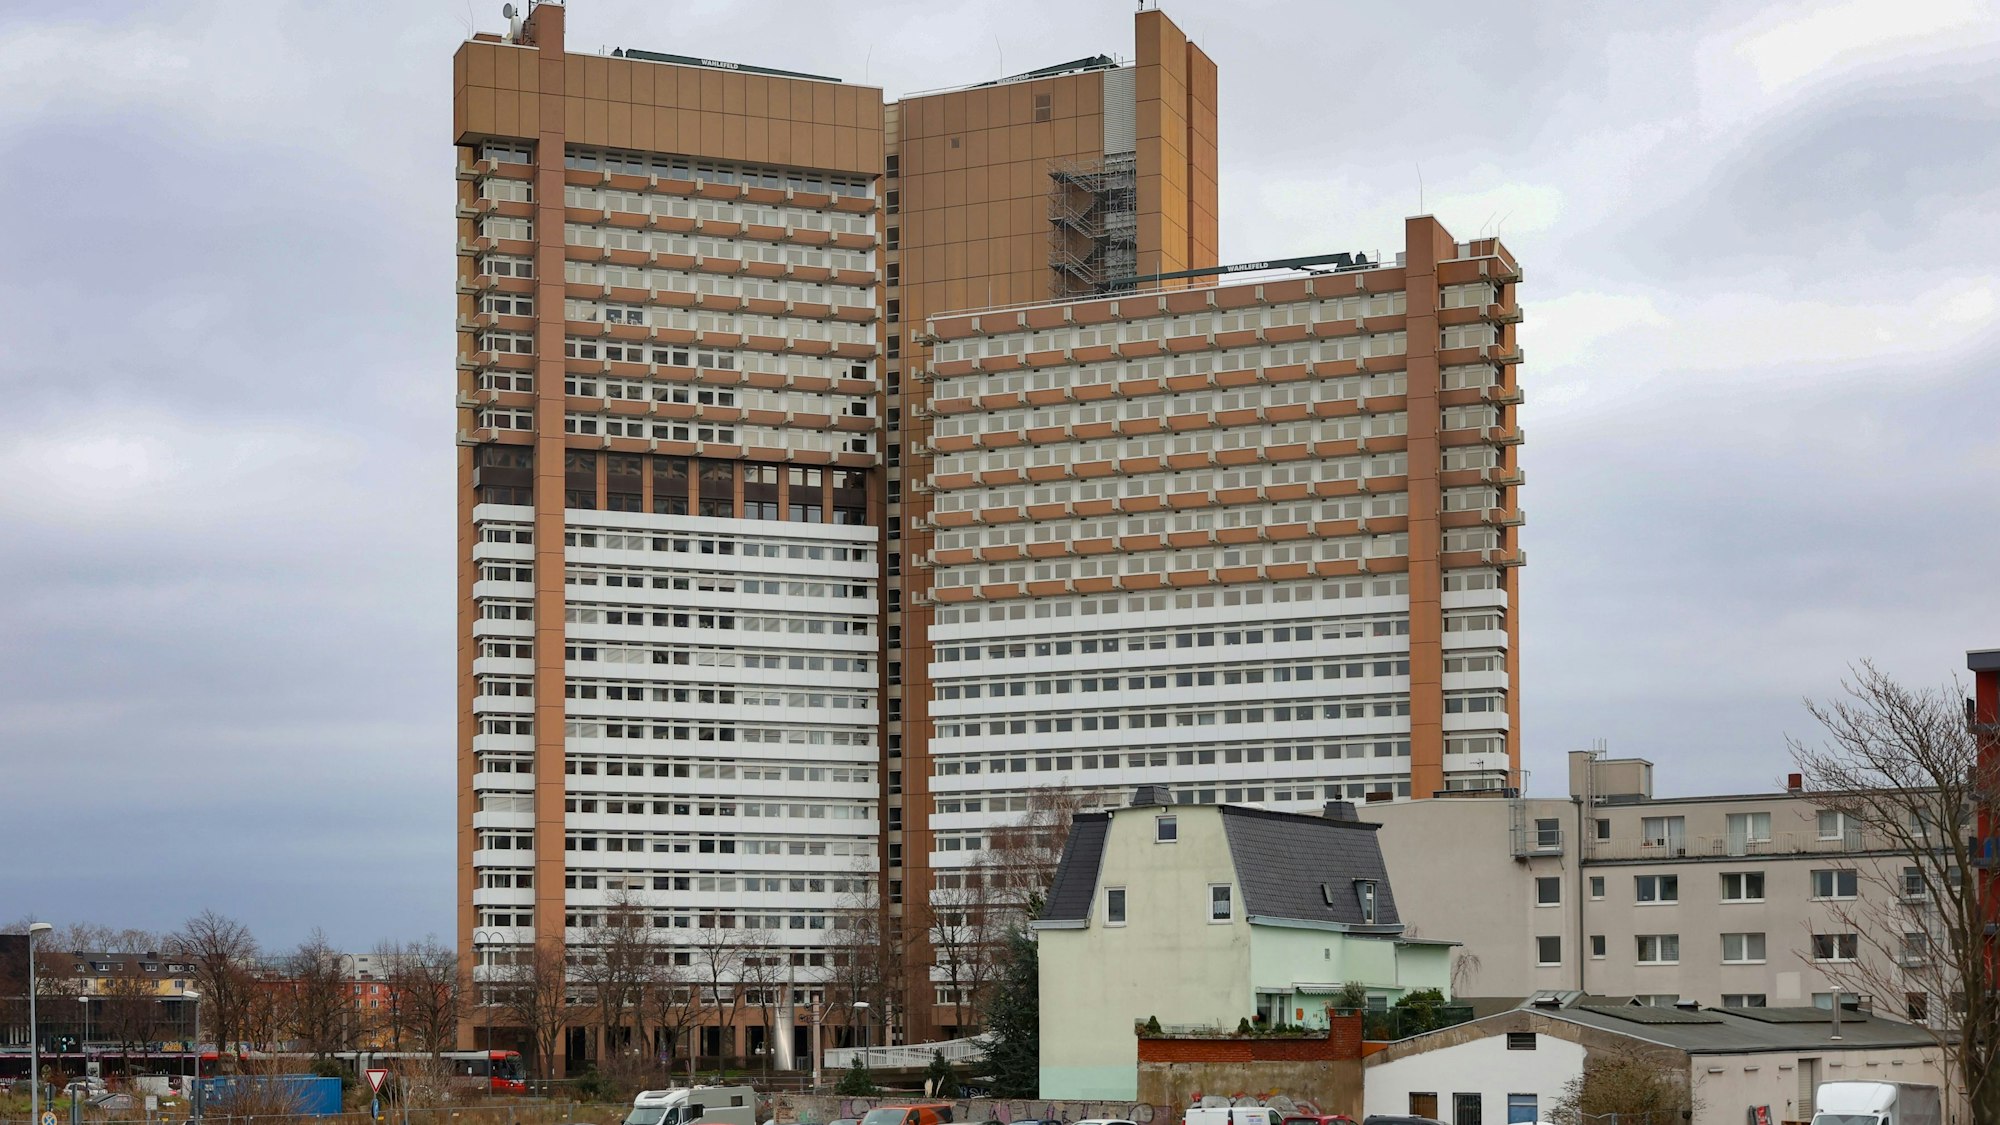 Das Justizzentrum Köln in der Luxemburger Straße 101